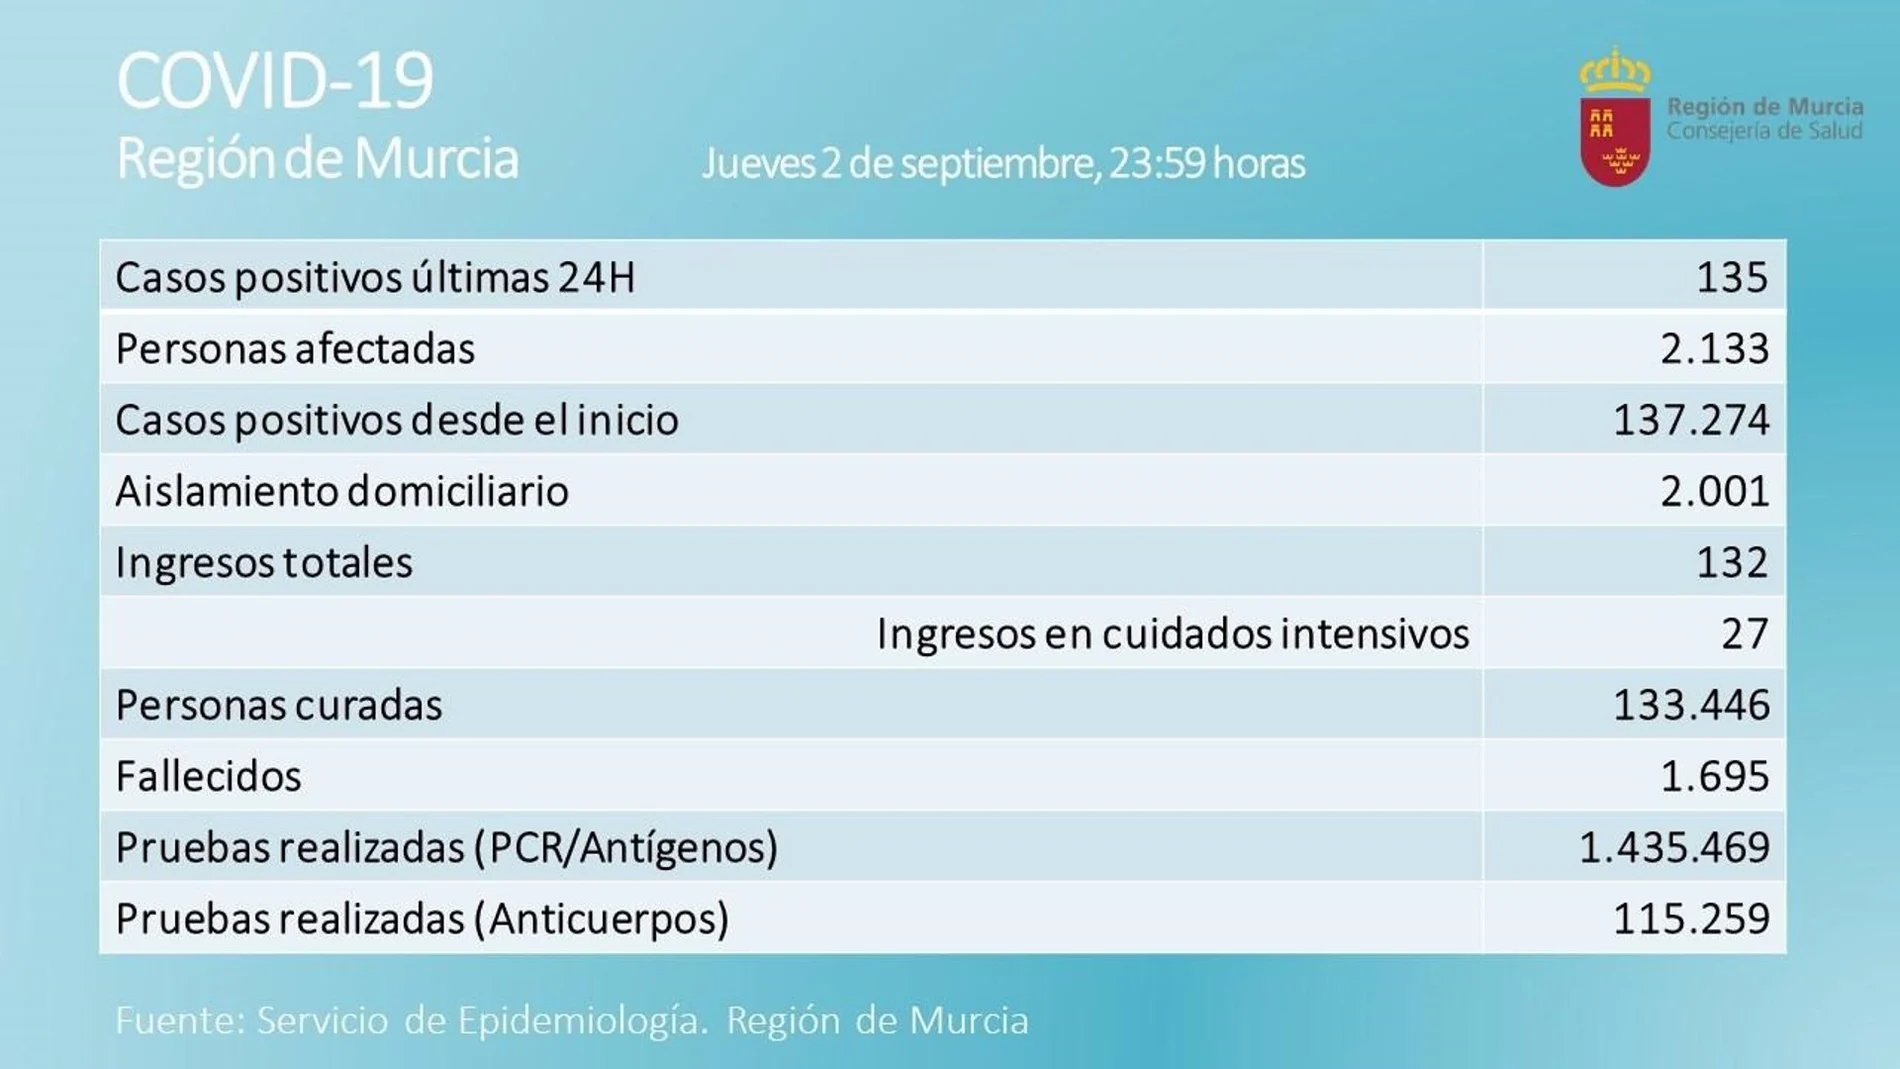 La Región de Murcia ha registrado 135 nuevos casos positivos por Covid-19 en las últimas 24 horas, en una jornada en la que se han registrado cuatro fallecimientos por esta causa